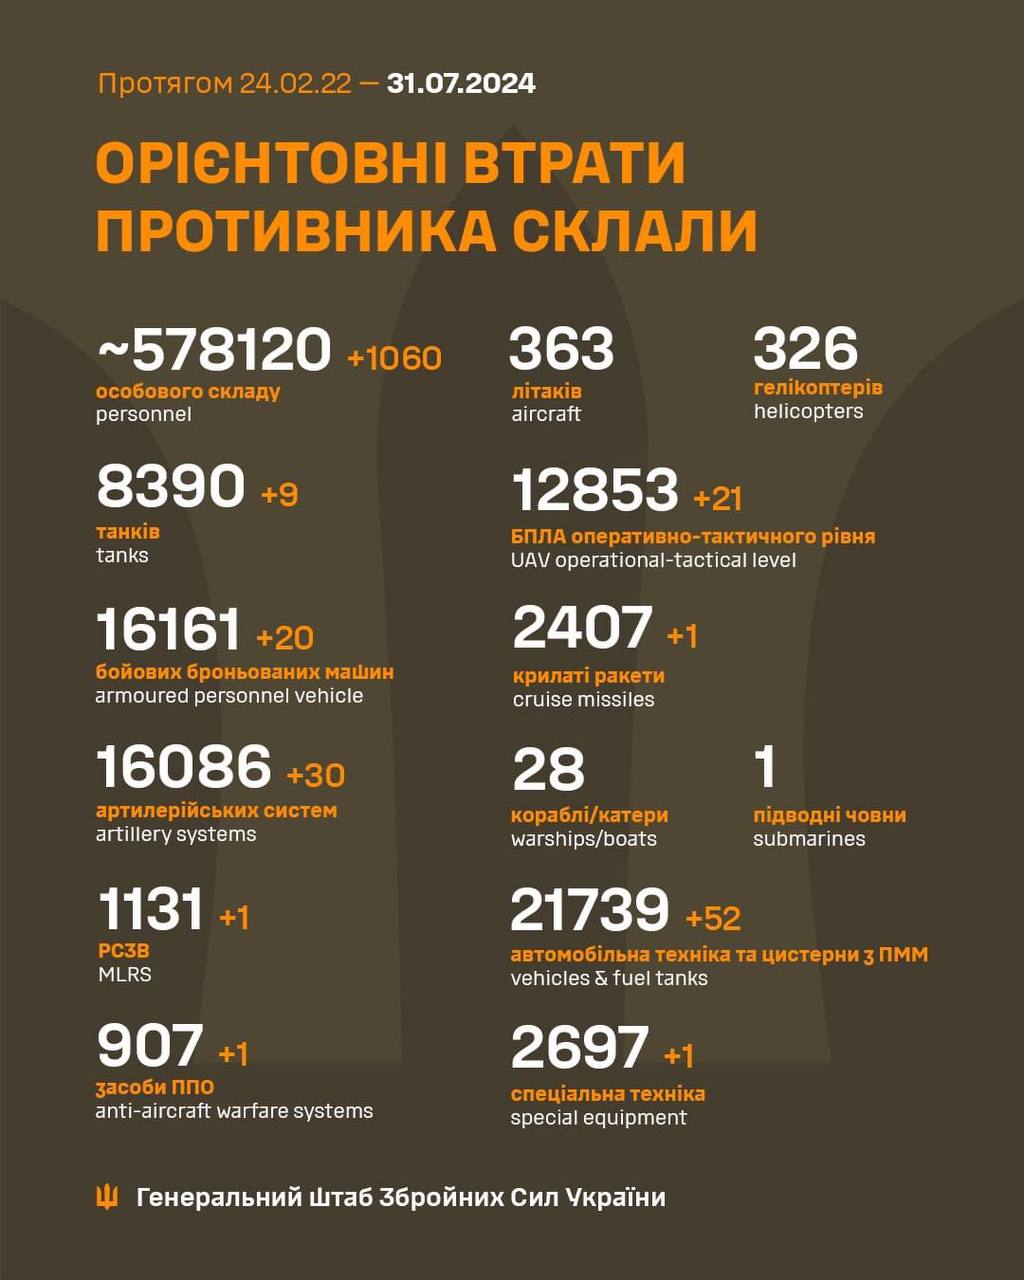 Еще 30 артсистем, 20 ББМ и более тысячи окупантов: потери РФ за сутки